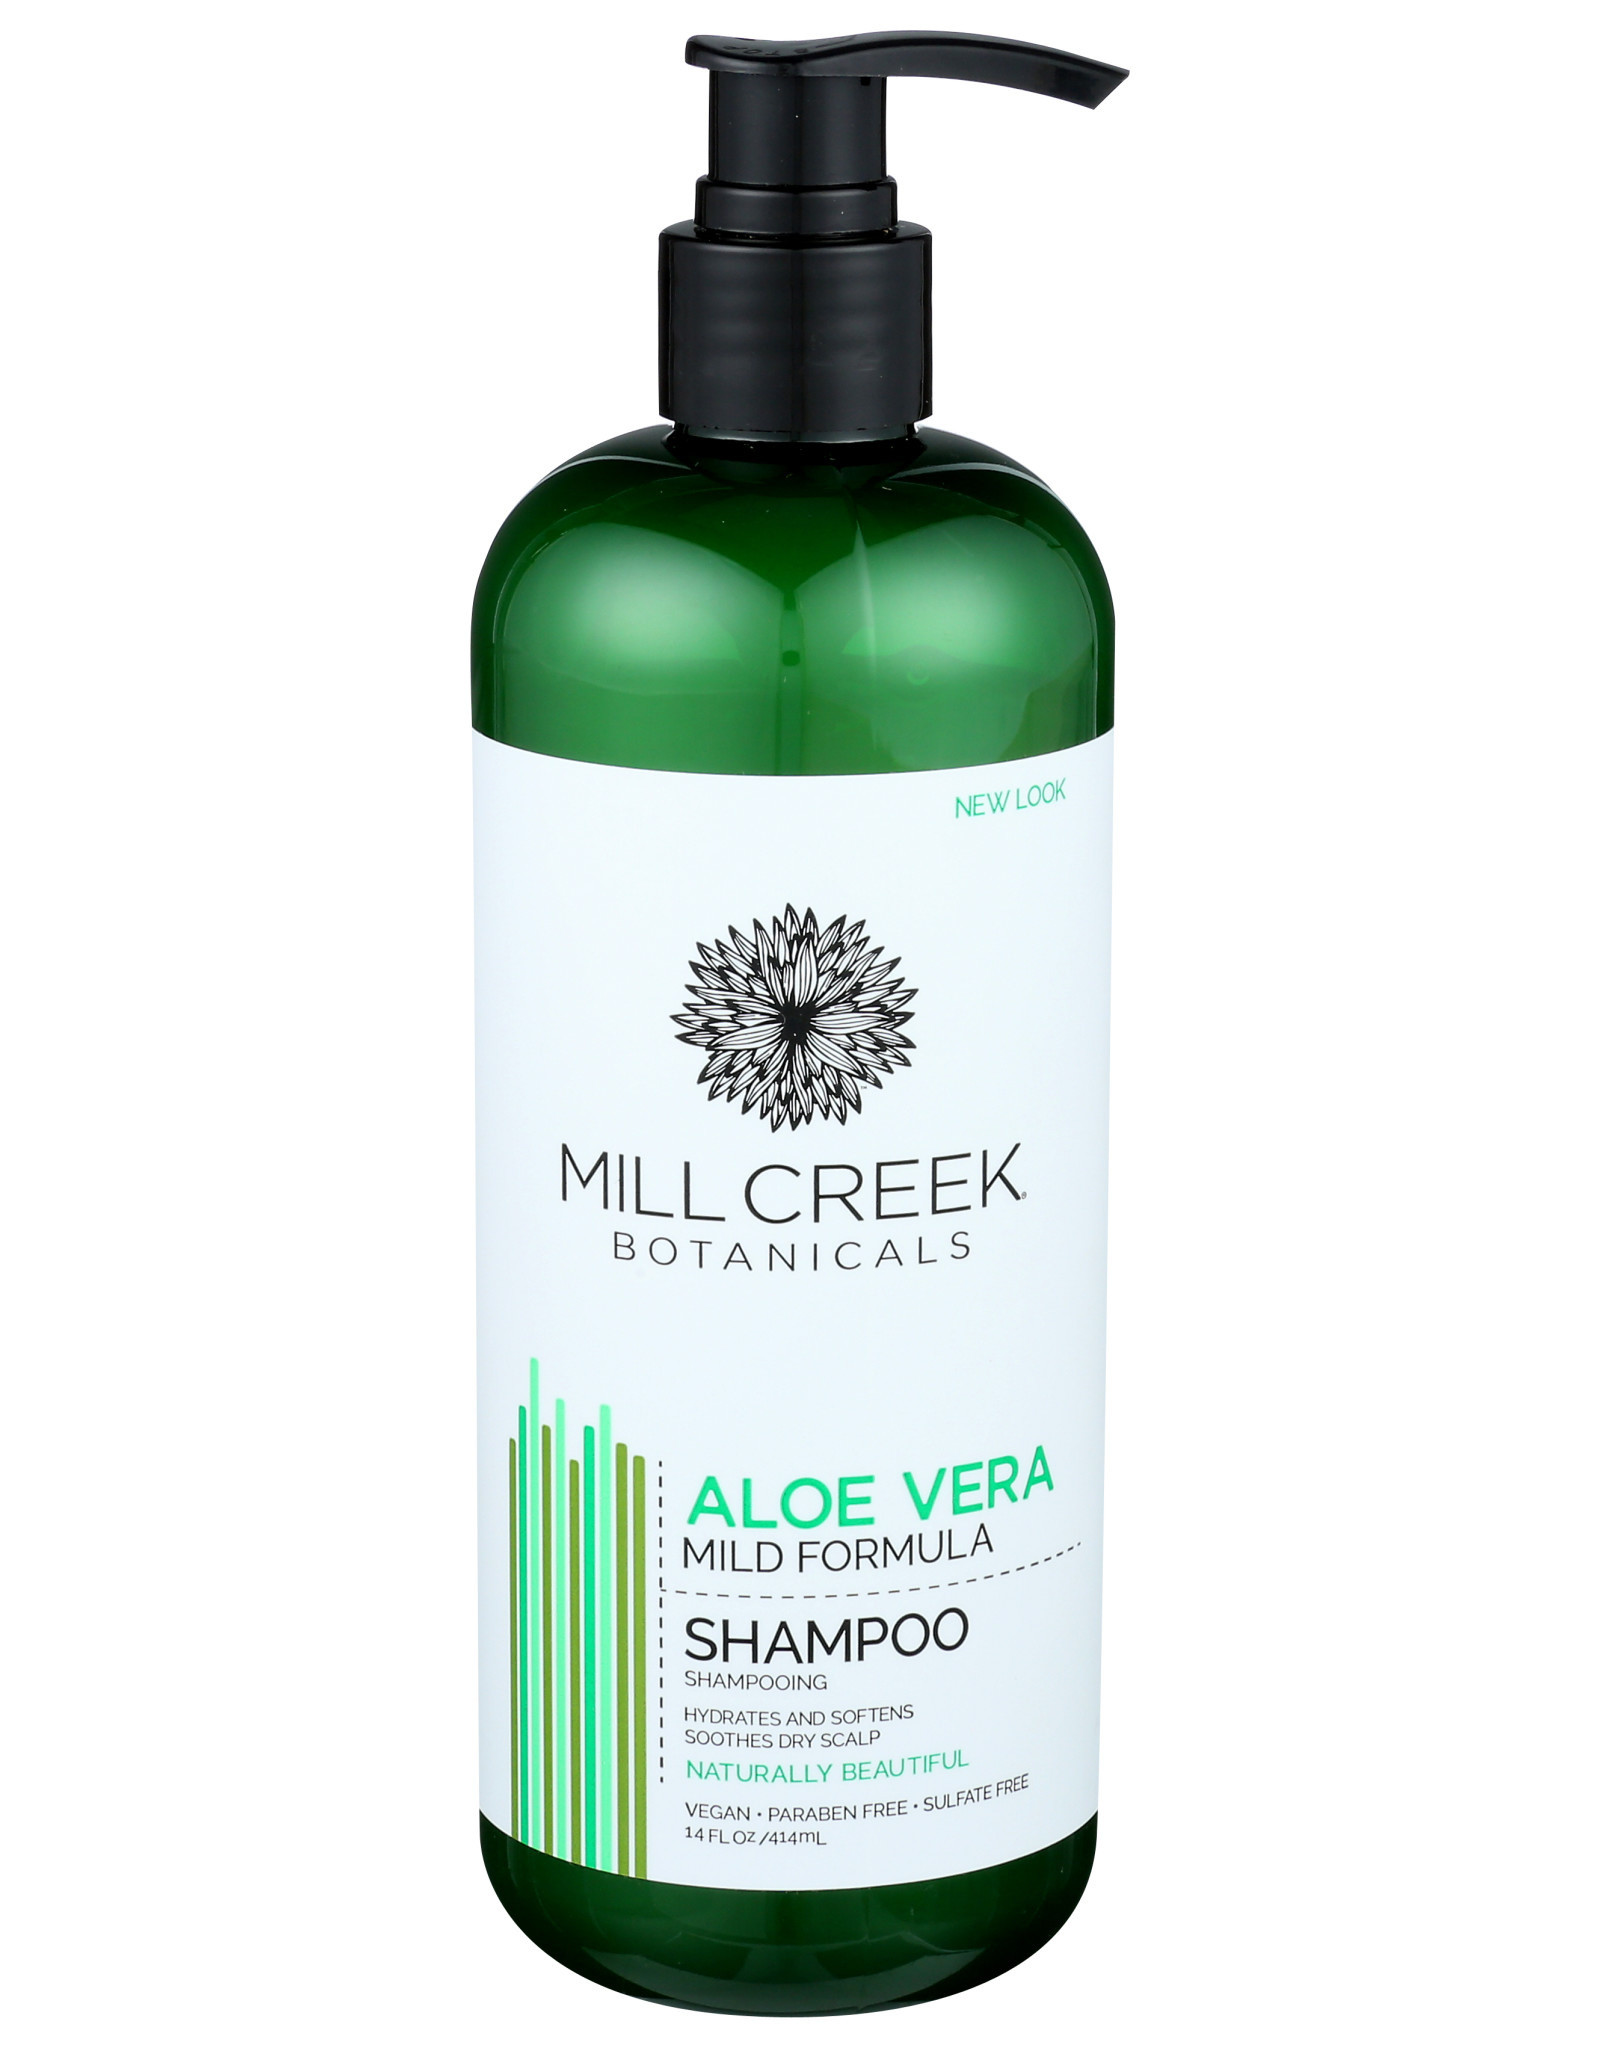 MILLCREEK X Mill Creek Botanicals Aloe Vera Shampoo 14 oz